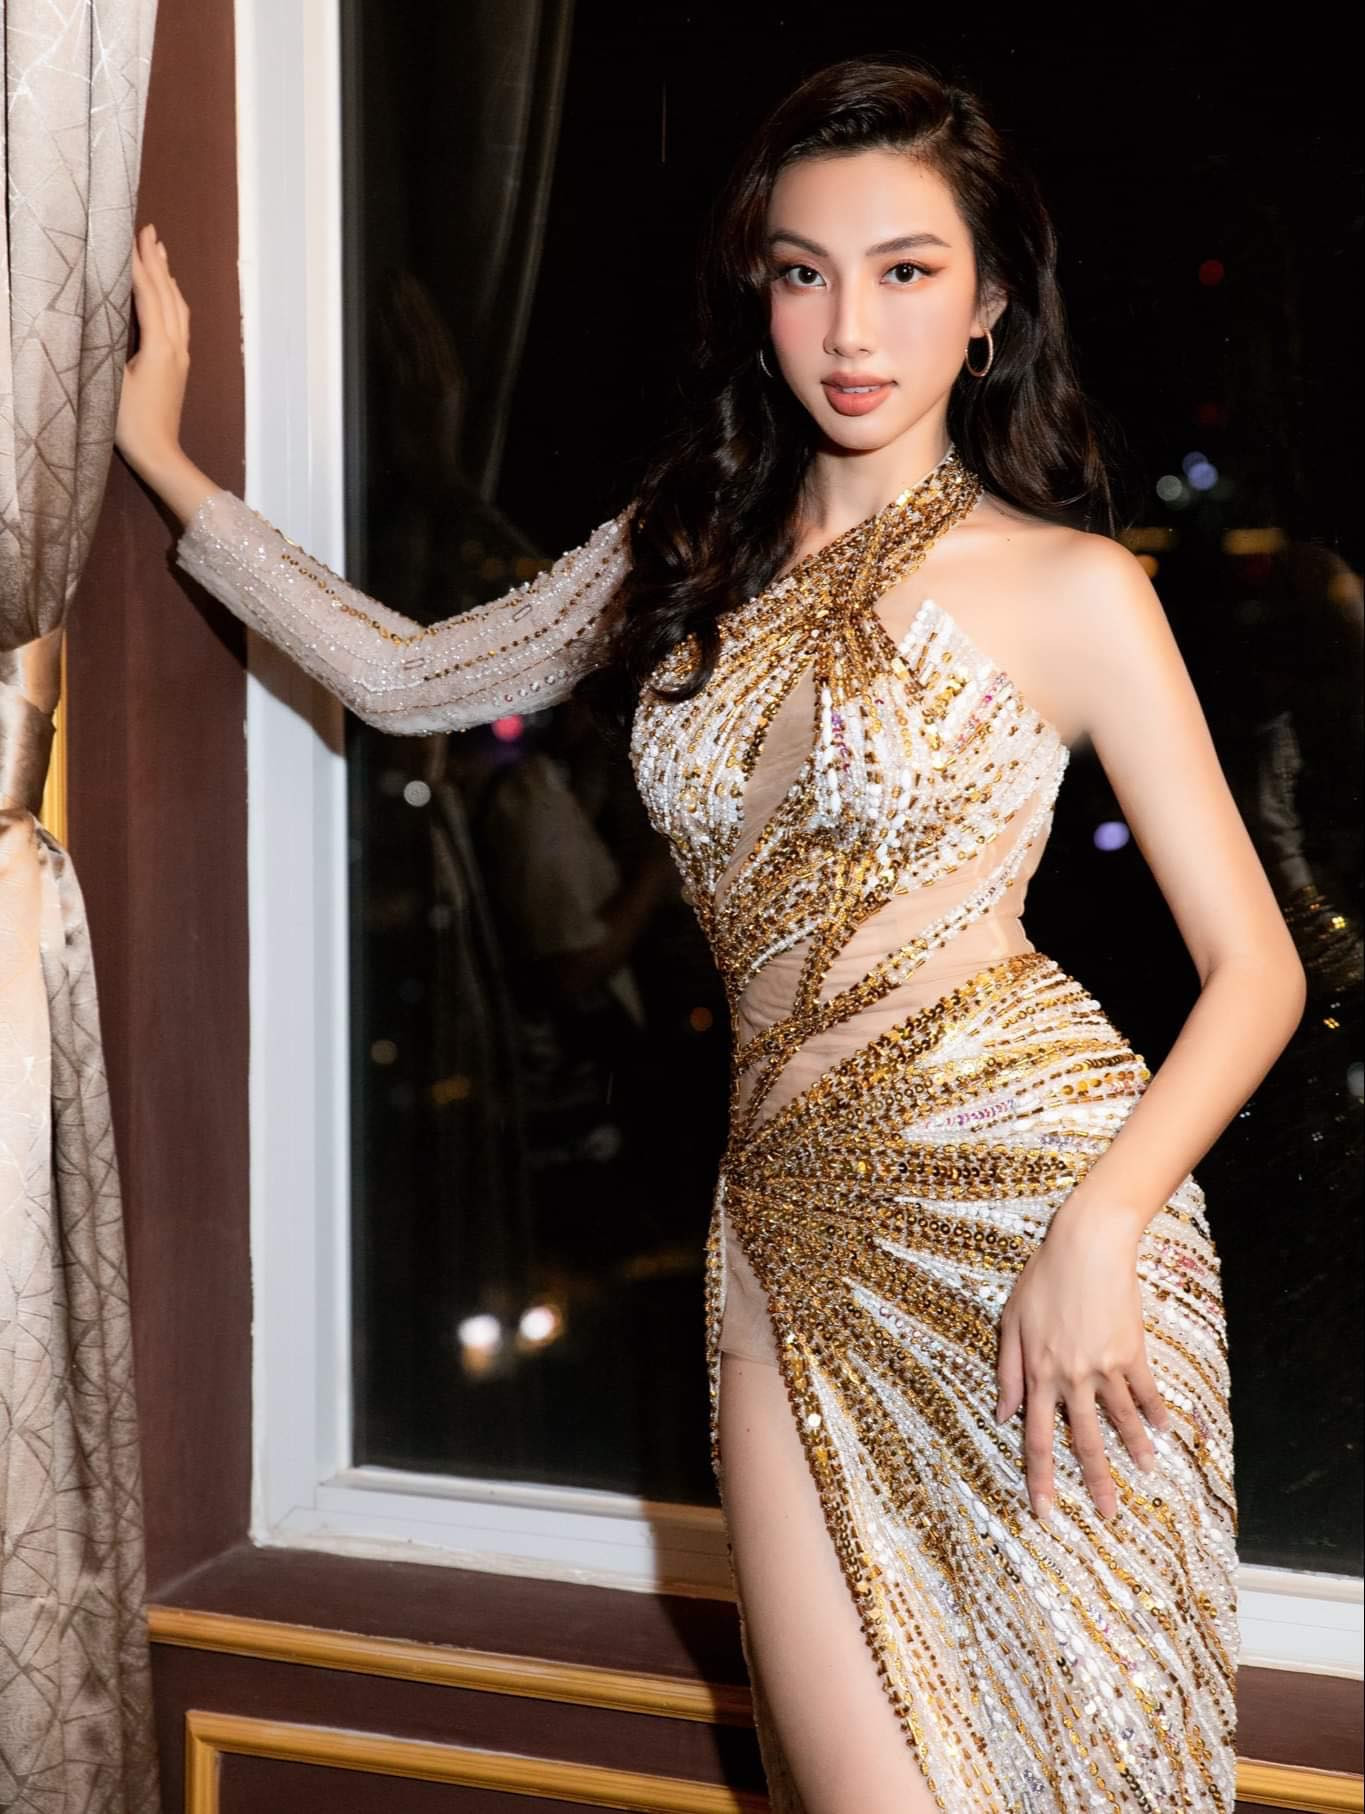 Hoa hậu Thùy Tiên bật khóc khẳng định bị lừa, vụ kiện là bước đi rủi ro trong sự nghiệp - Ảnh 3.